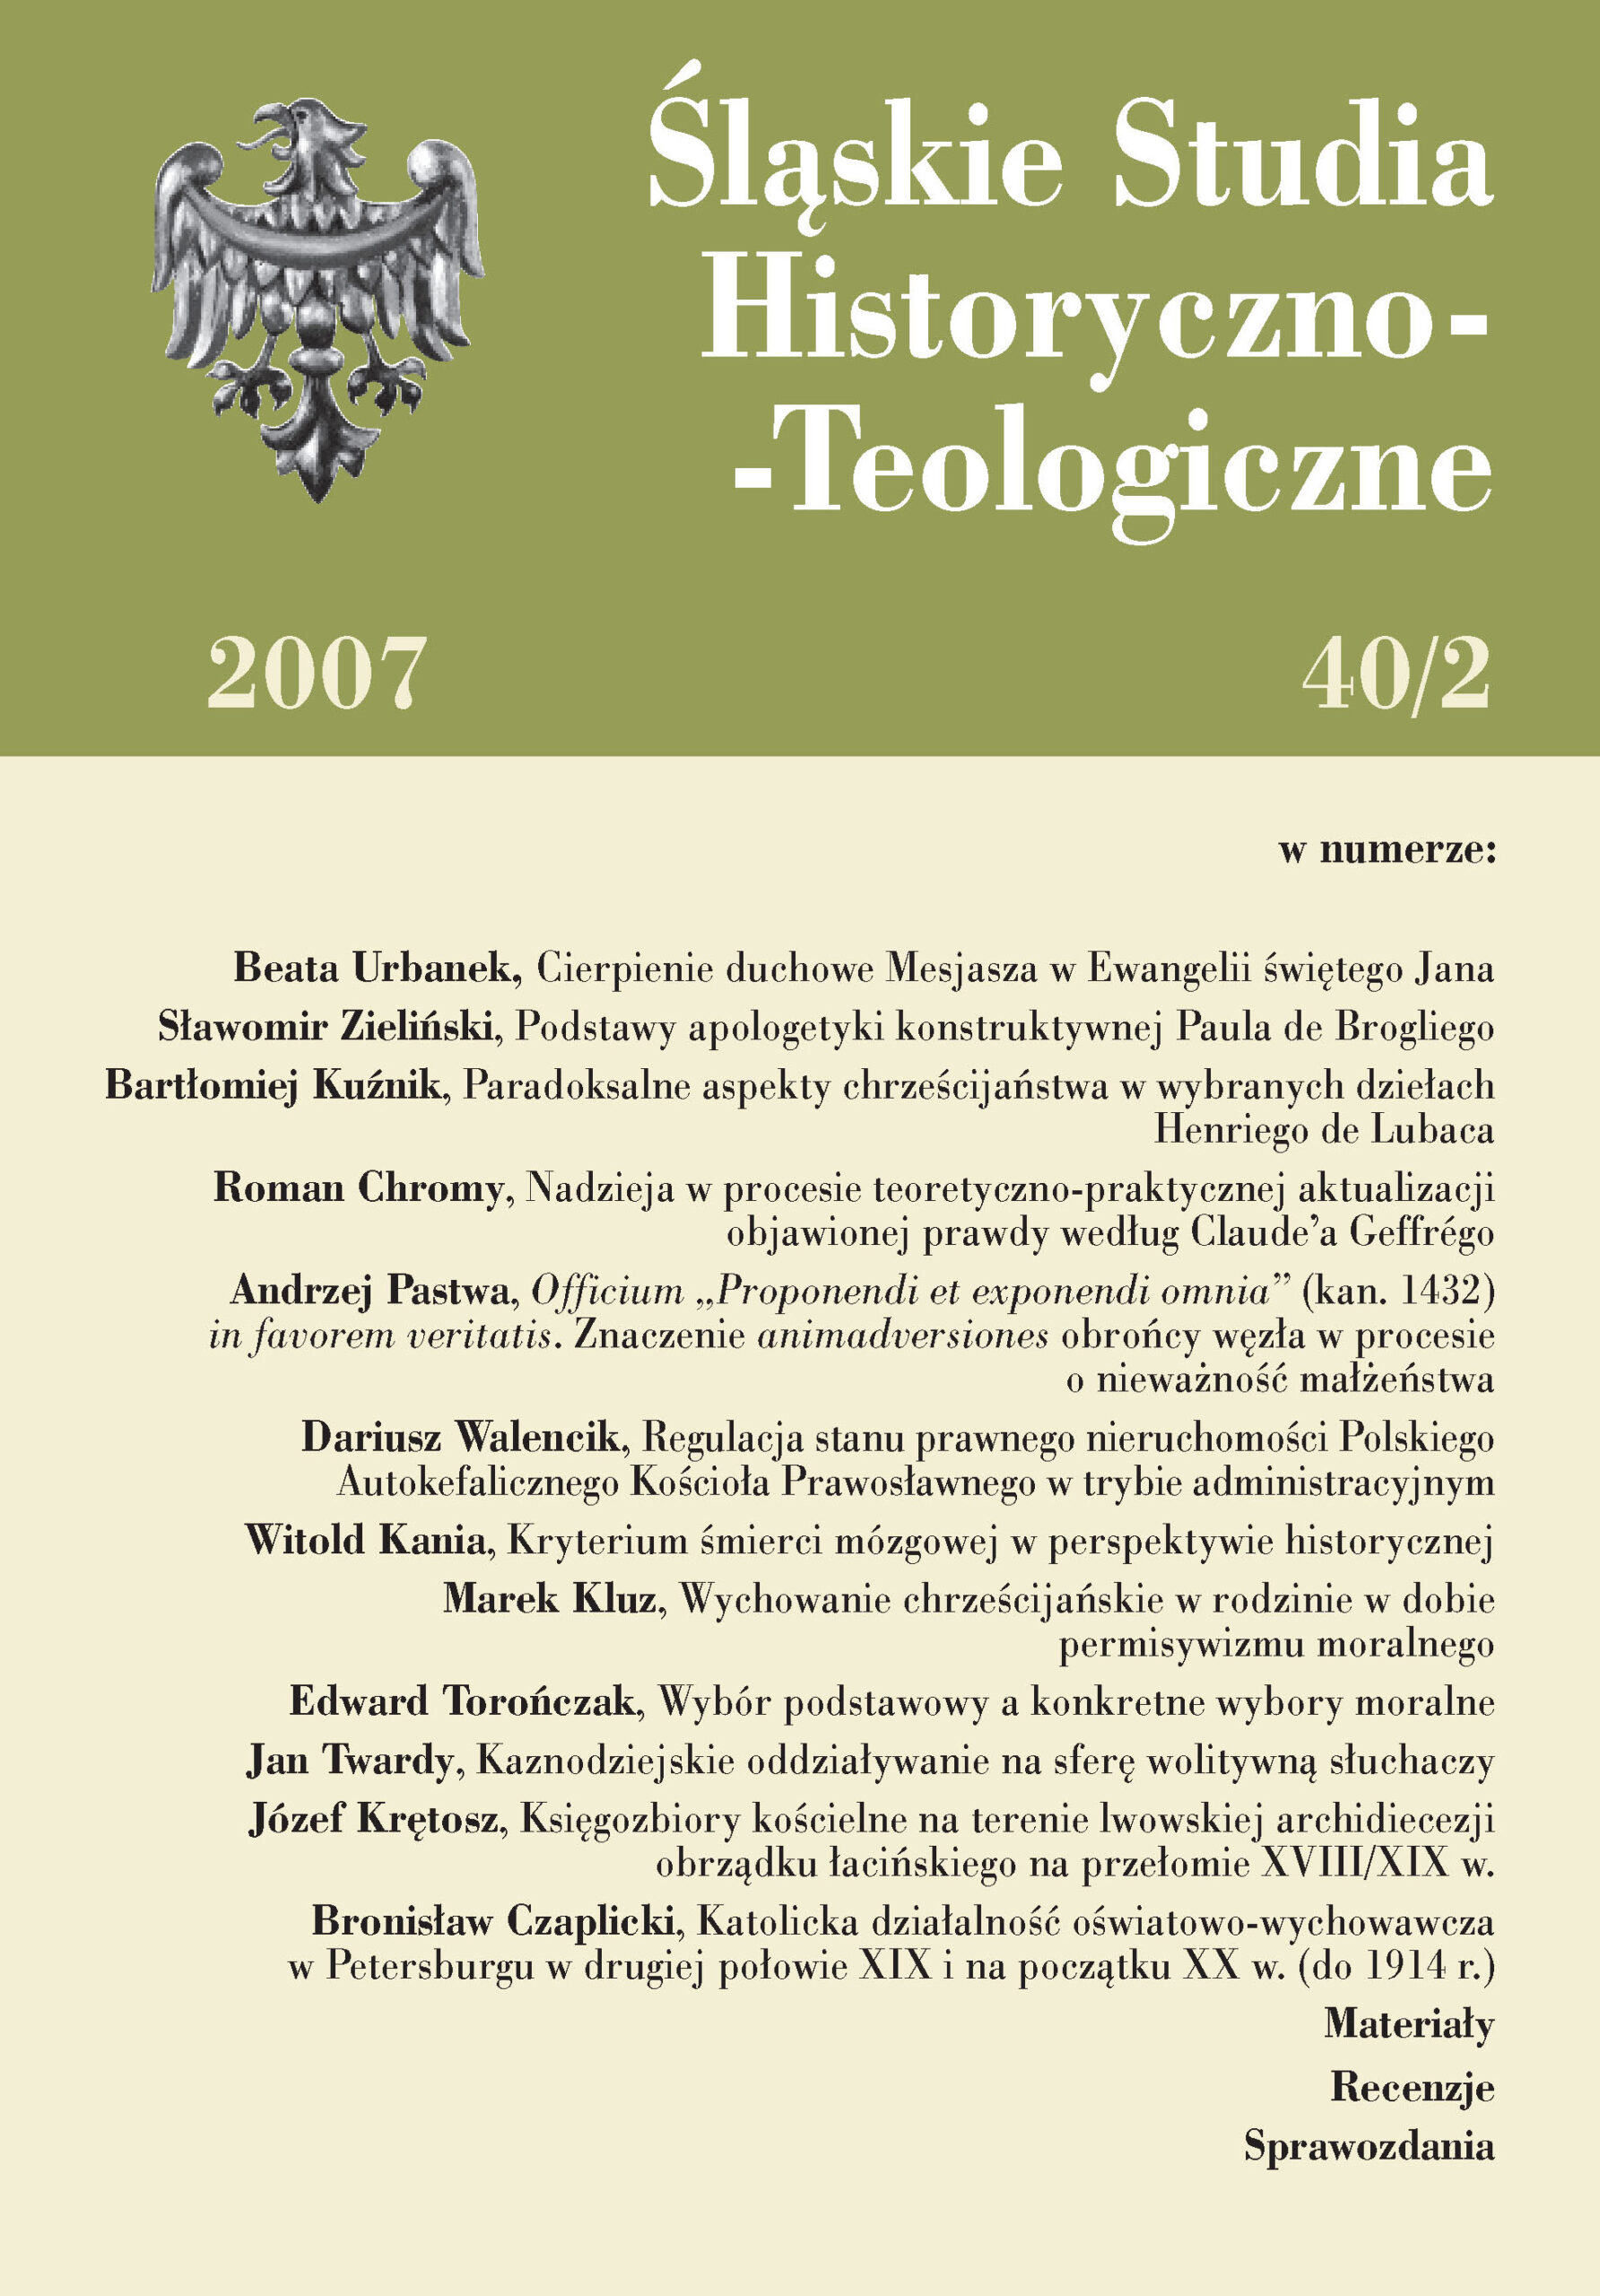 Śląskie Studia Historyczno-Teologiczne (40/2, 2007)